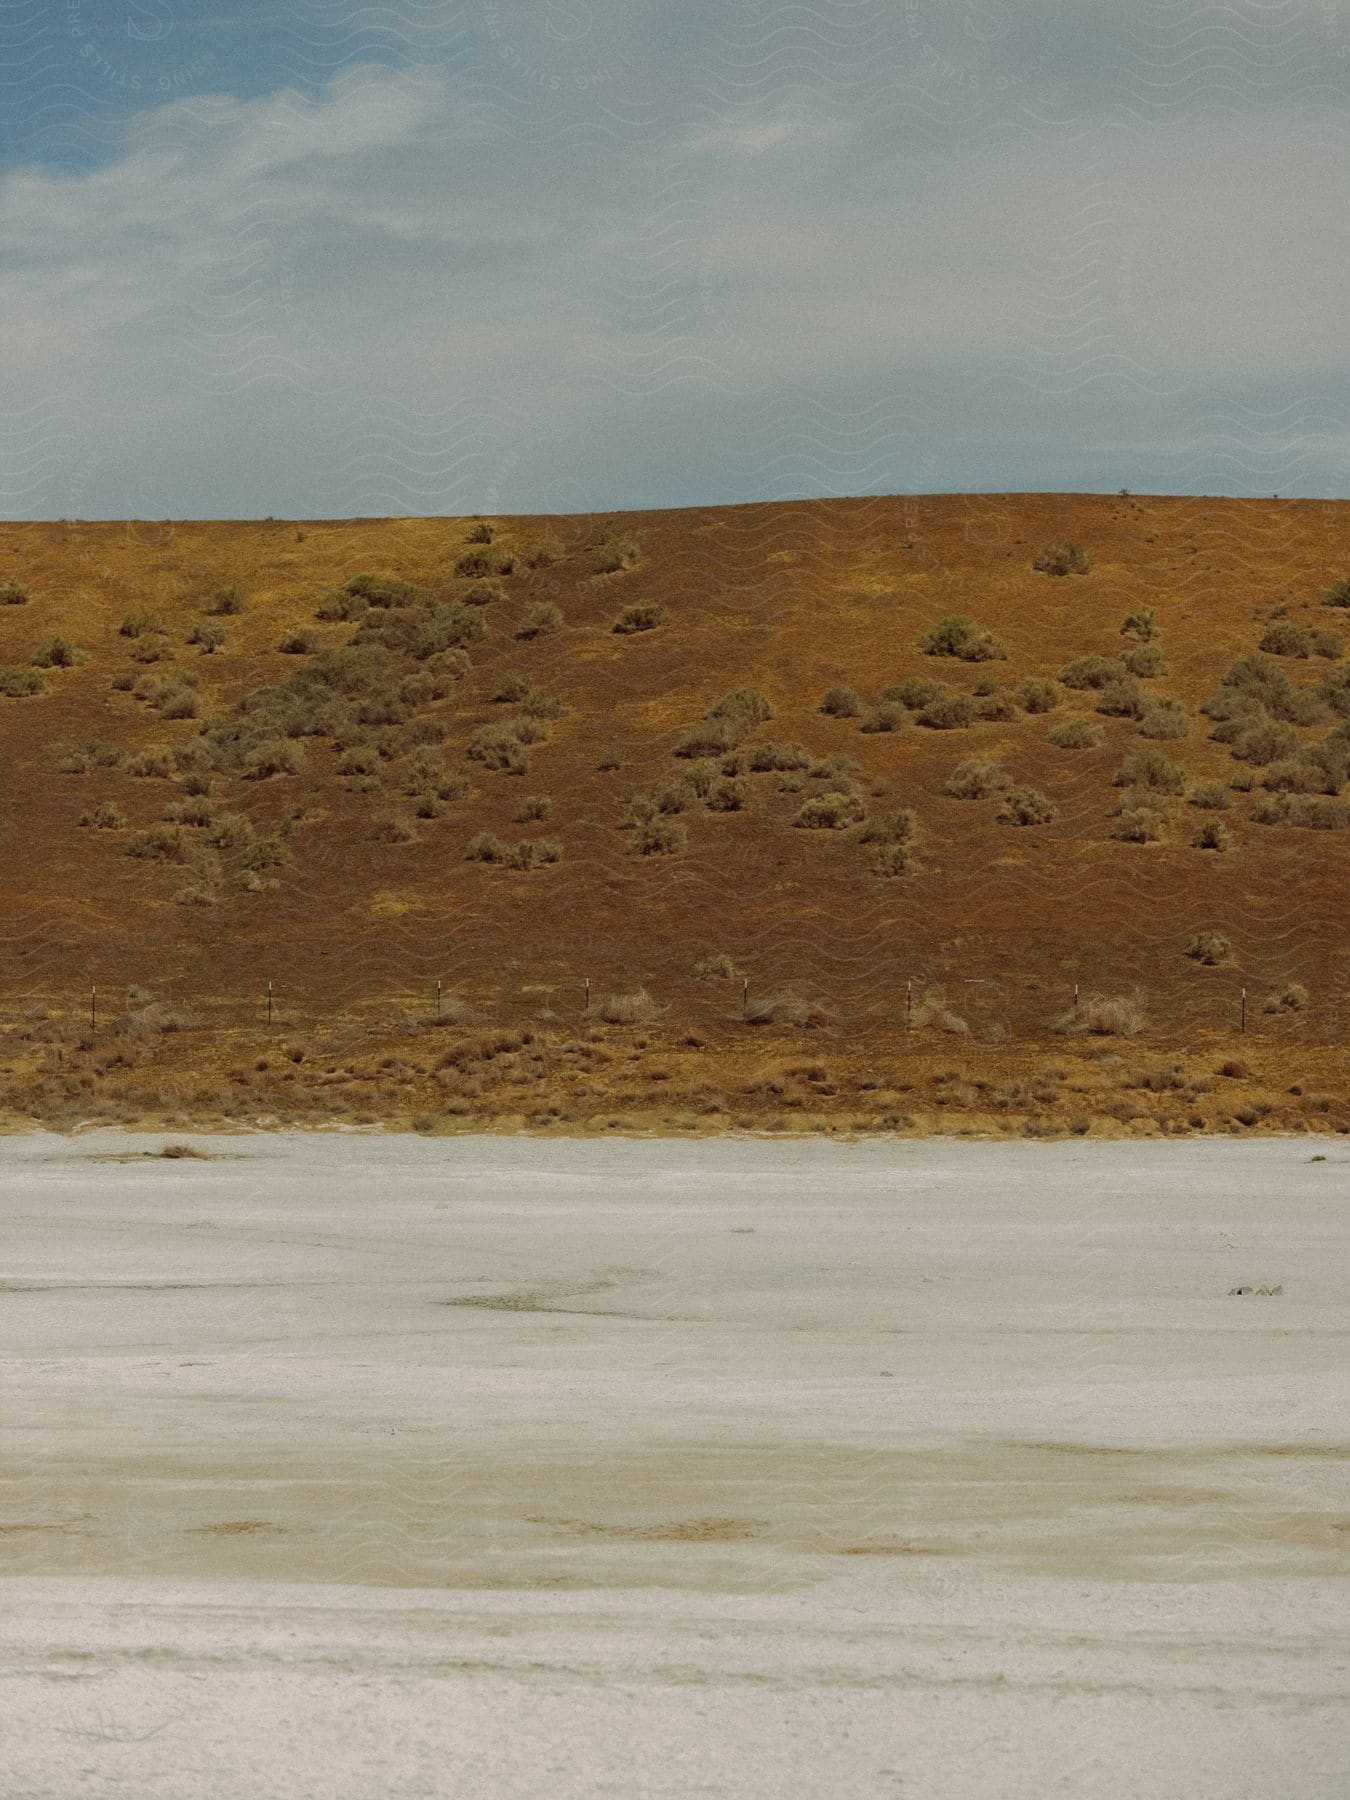 A brown desert hillside with scattered desert bushes adjacent to a sandy white salt plain